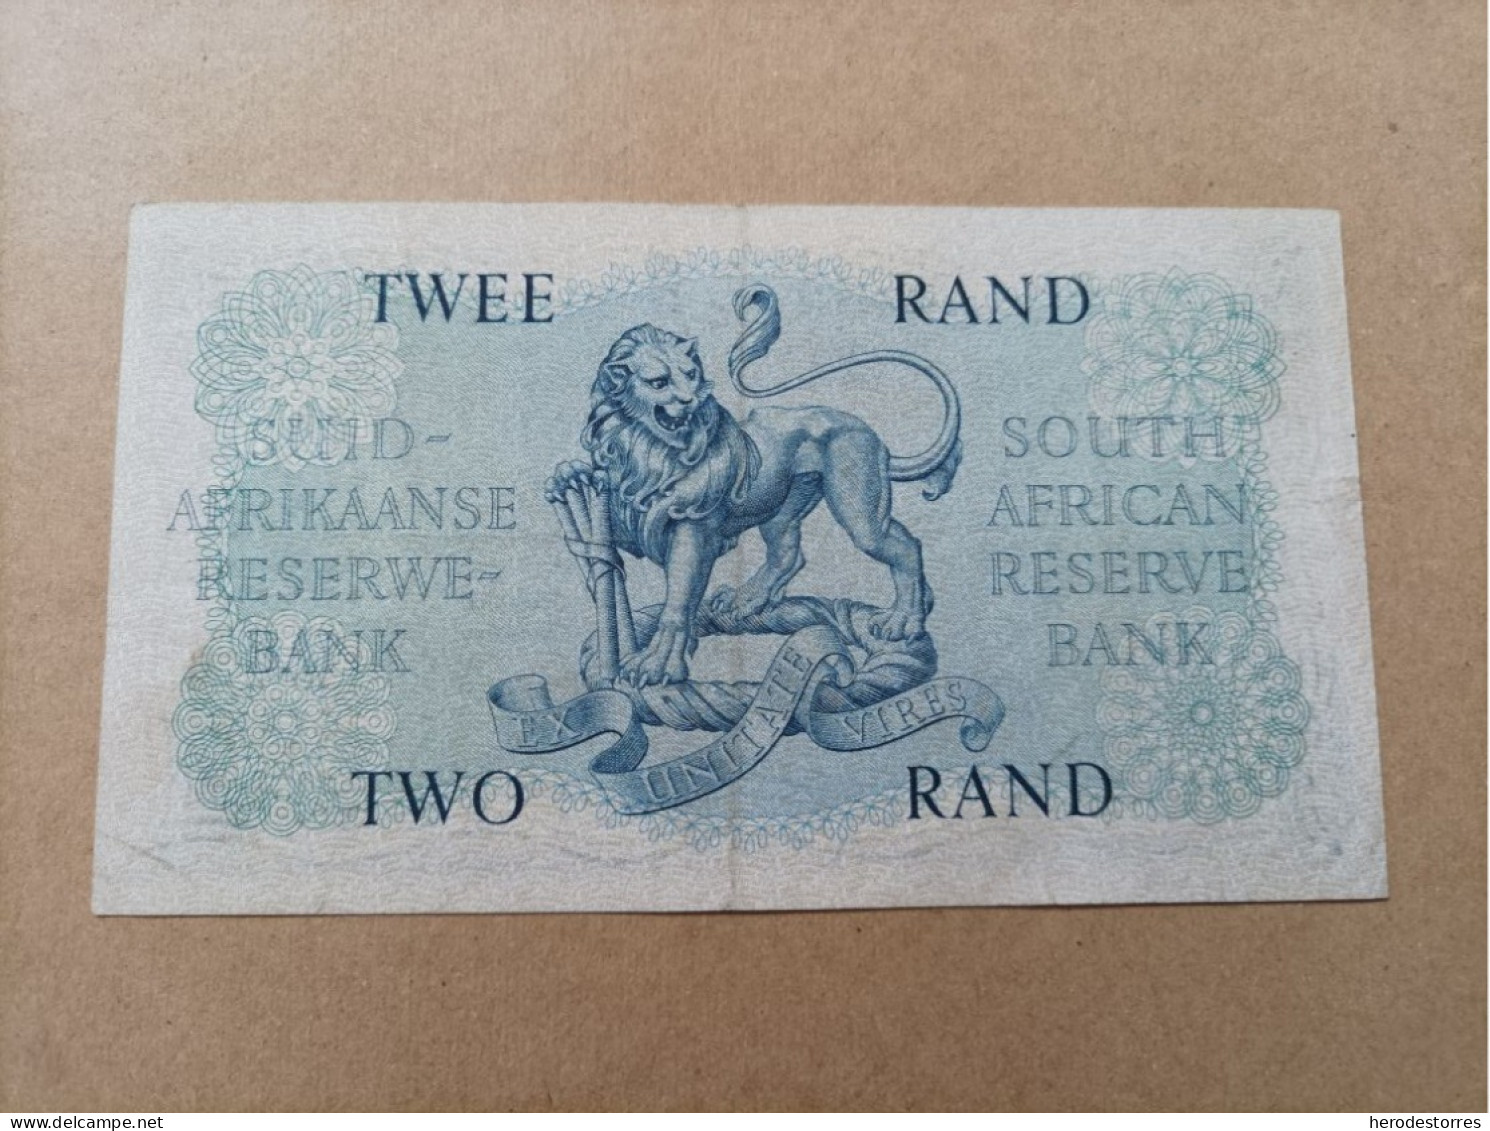 Billete De Sudafrica De 2 Rand - Suráfrica